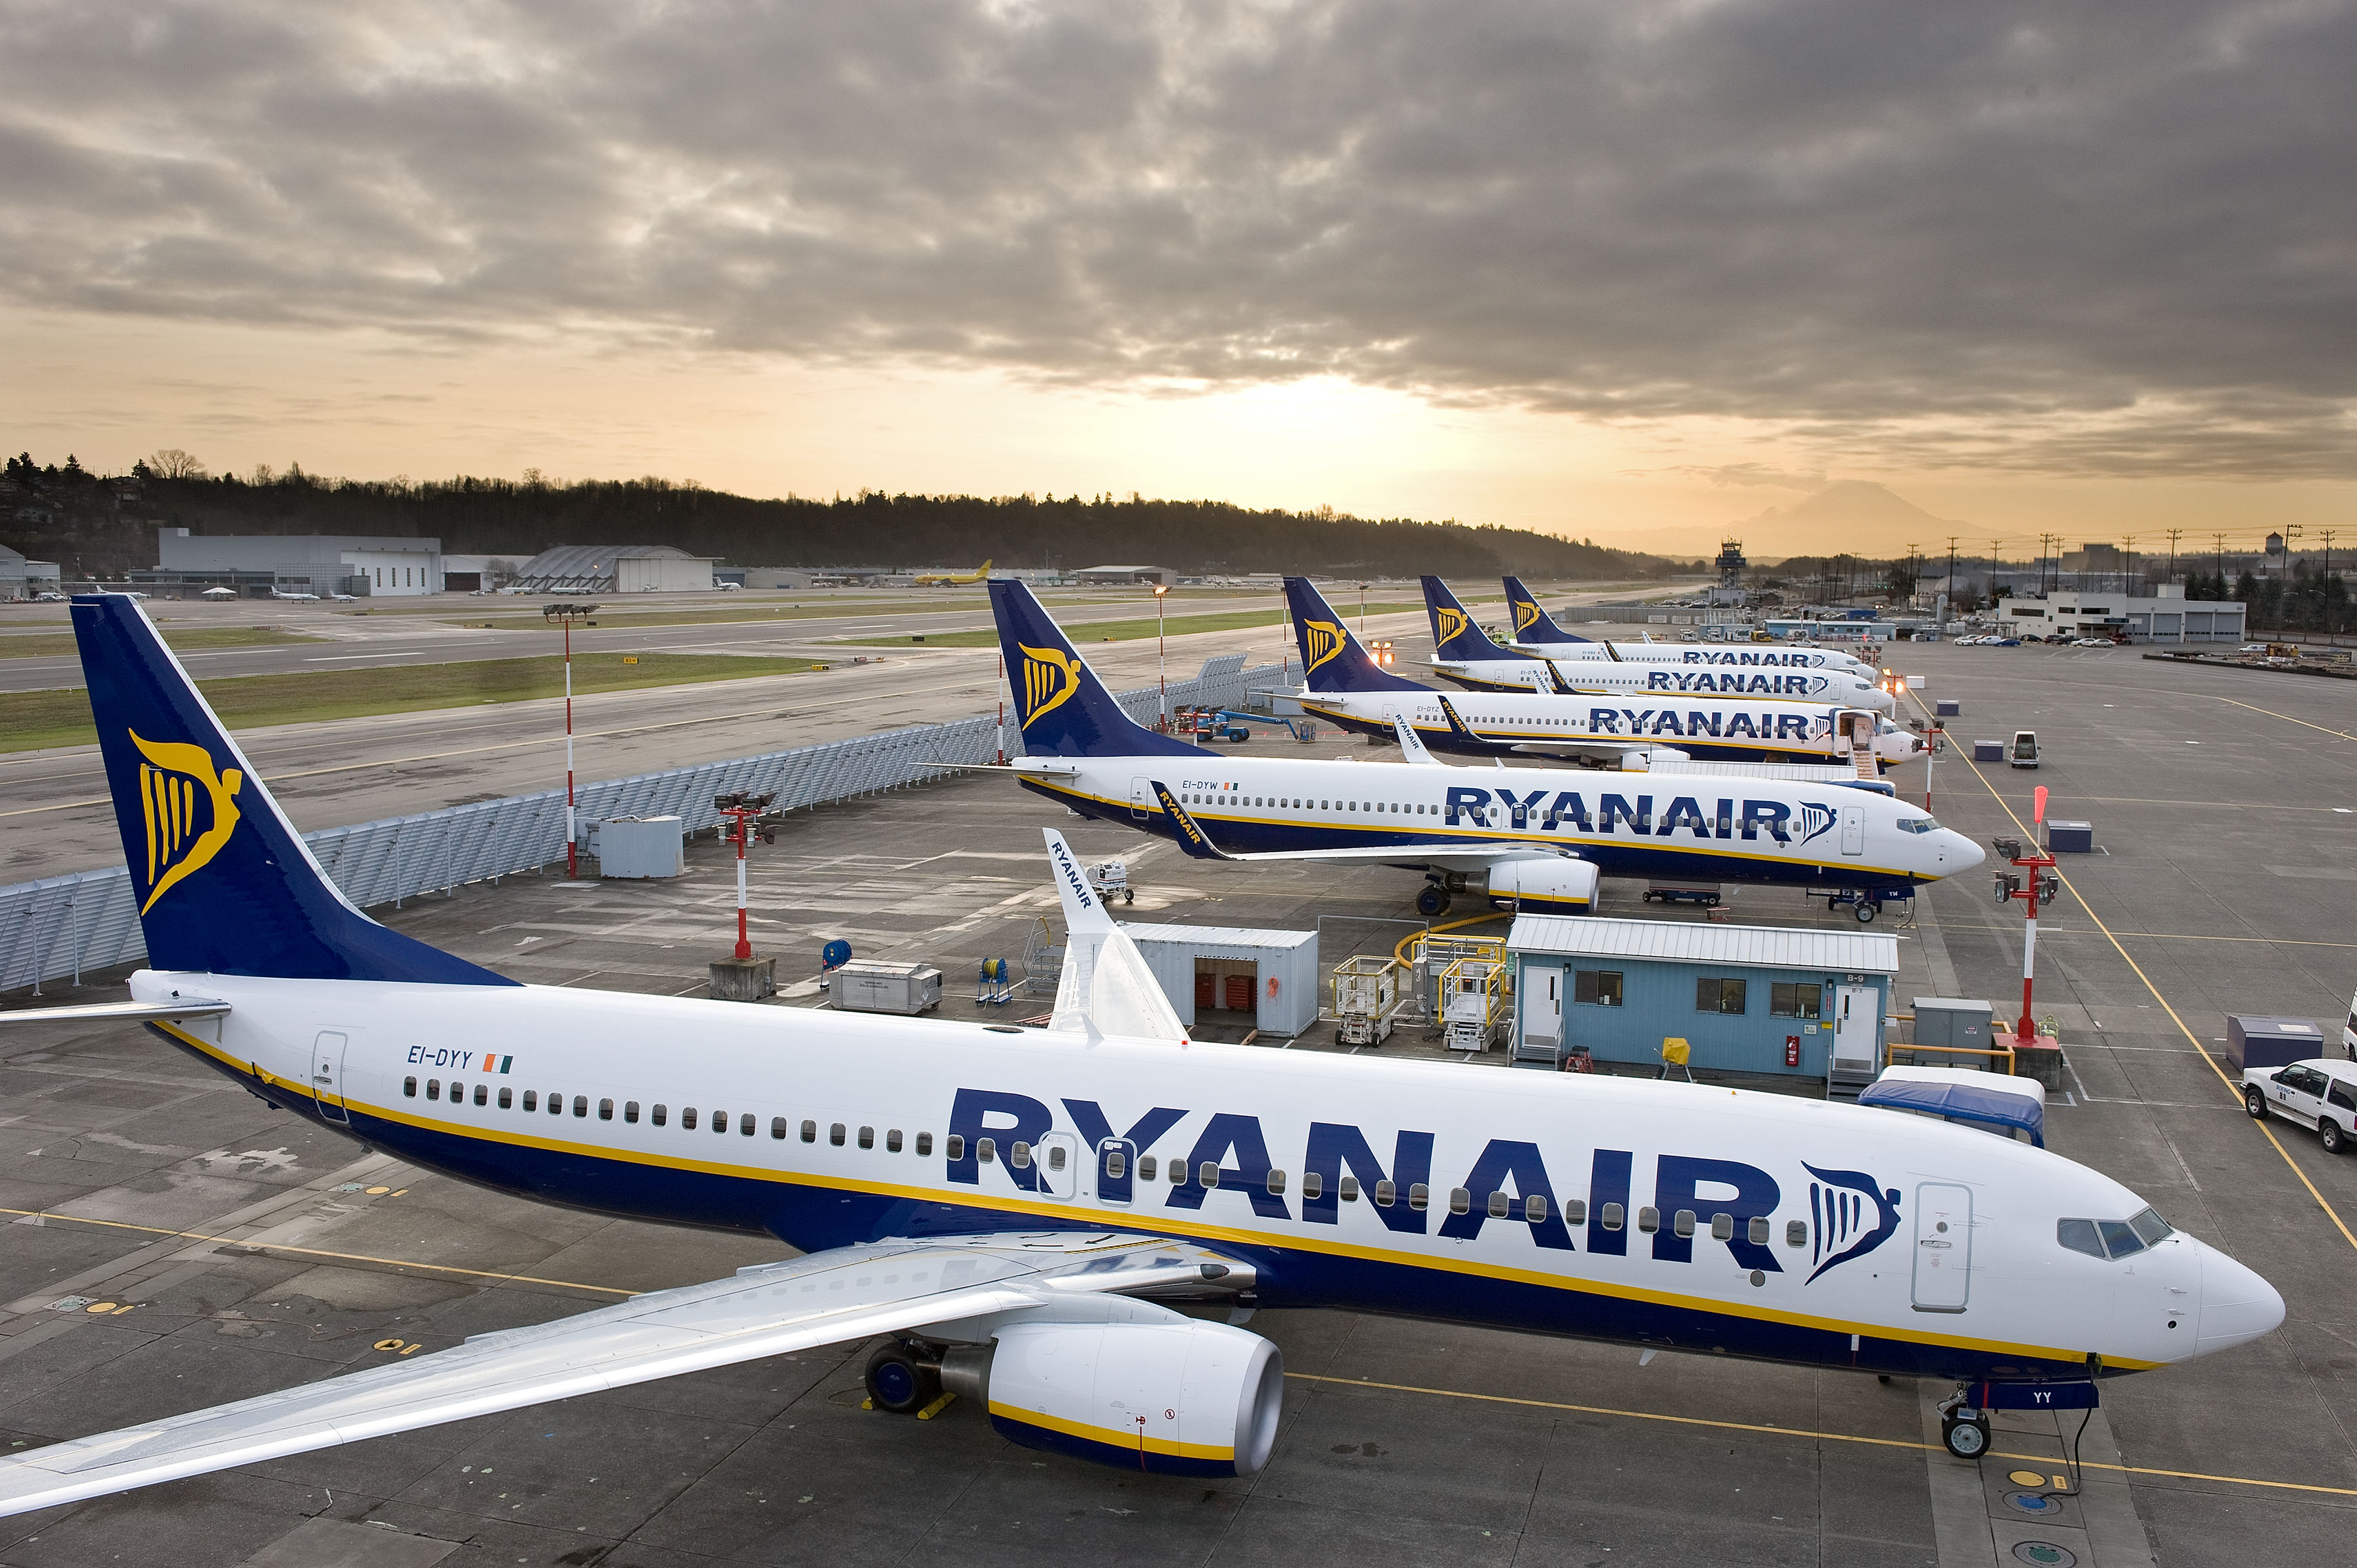 Η Κινηση Σεπτεμβριου Της  Ryanair Αυξηθηκε Κατα 10% Σε 11.8 Εκατομμυρια Επιβατες